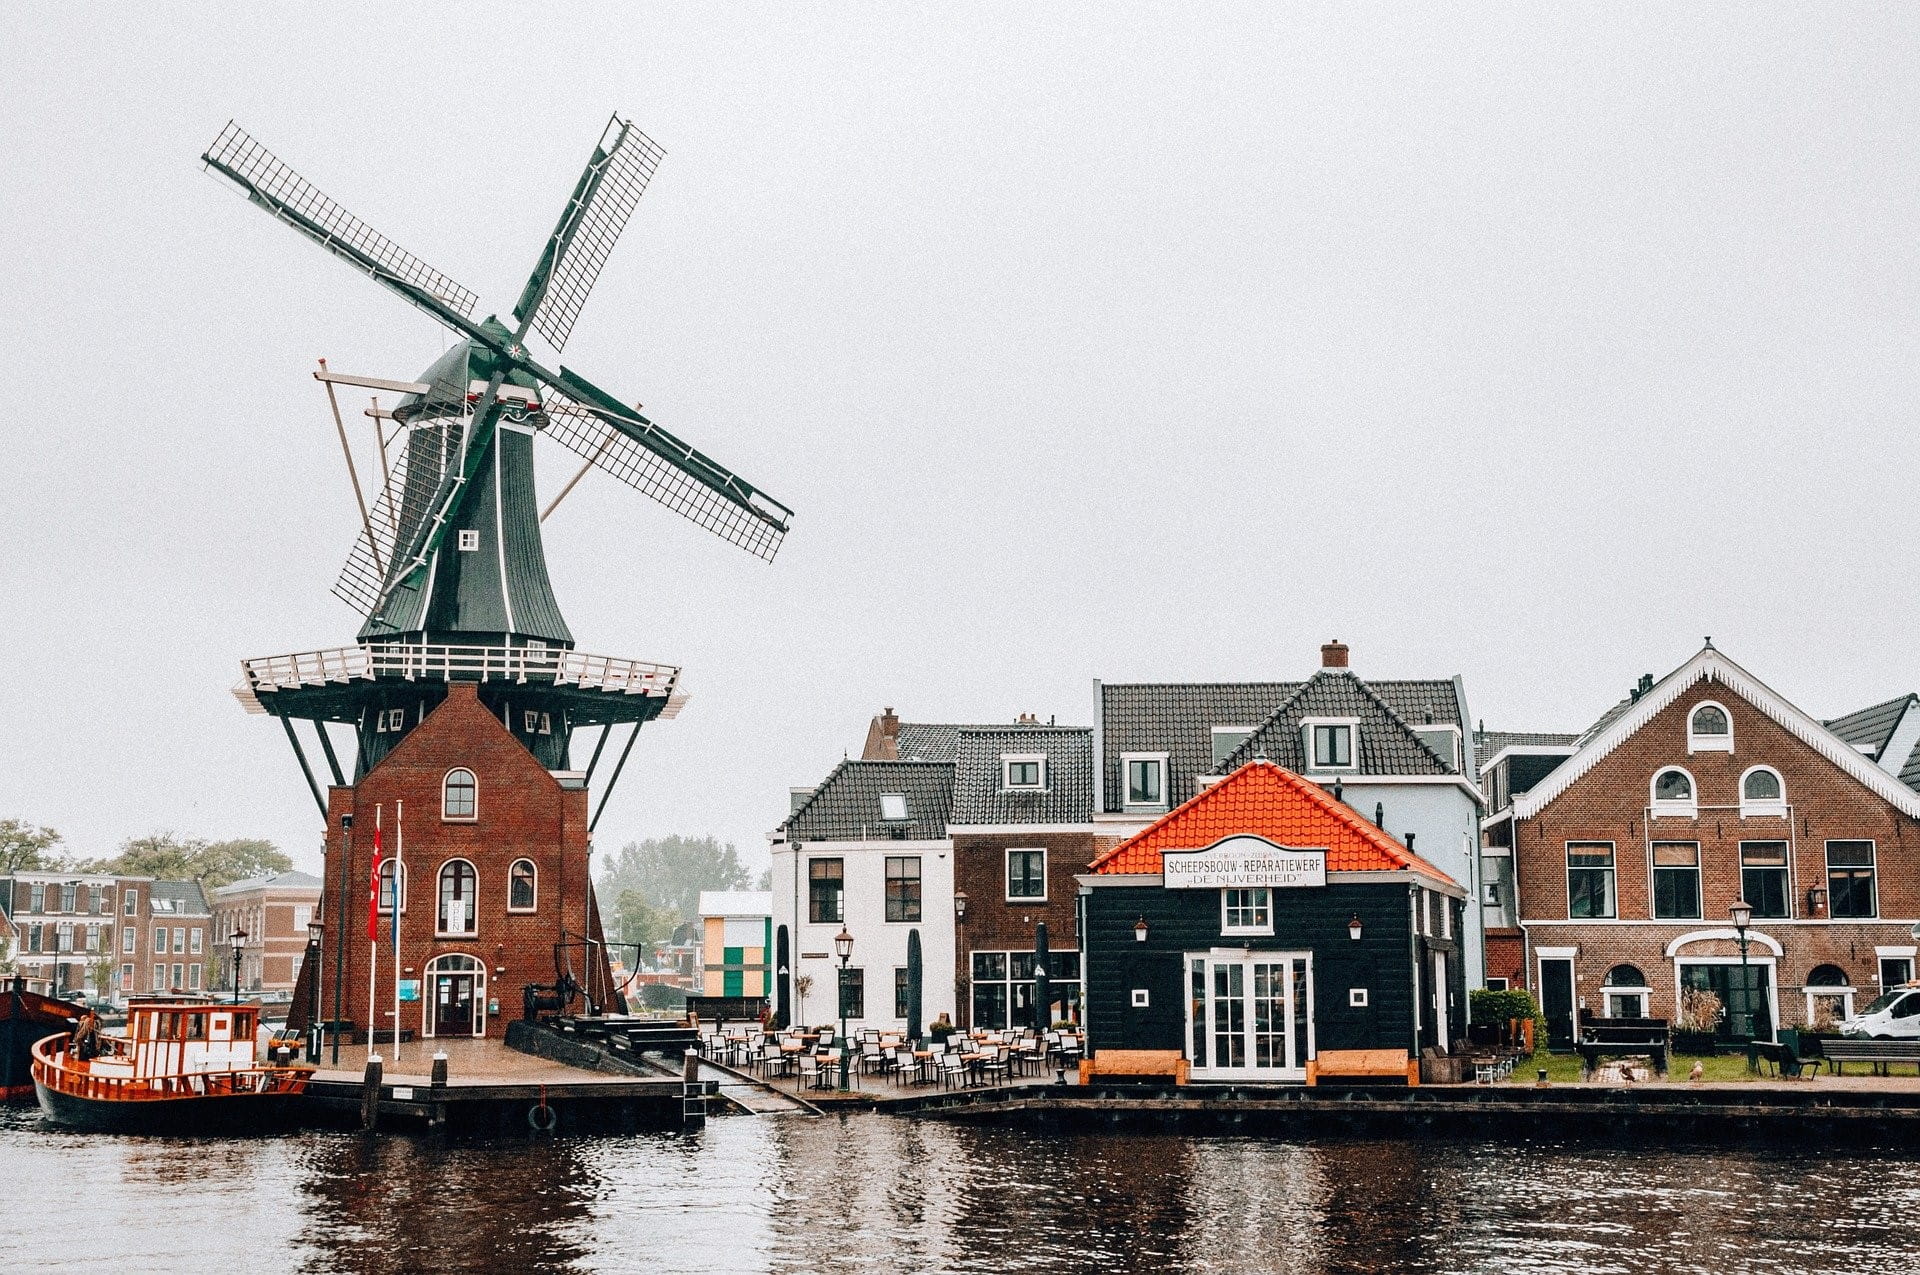 Ein niederländisches Dorf mit Windmühle und kleinen Häusern.